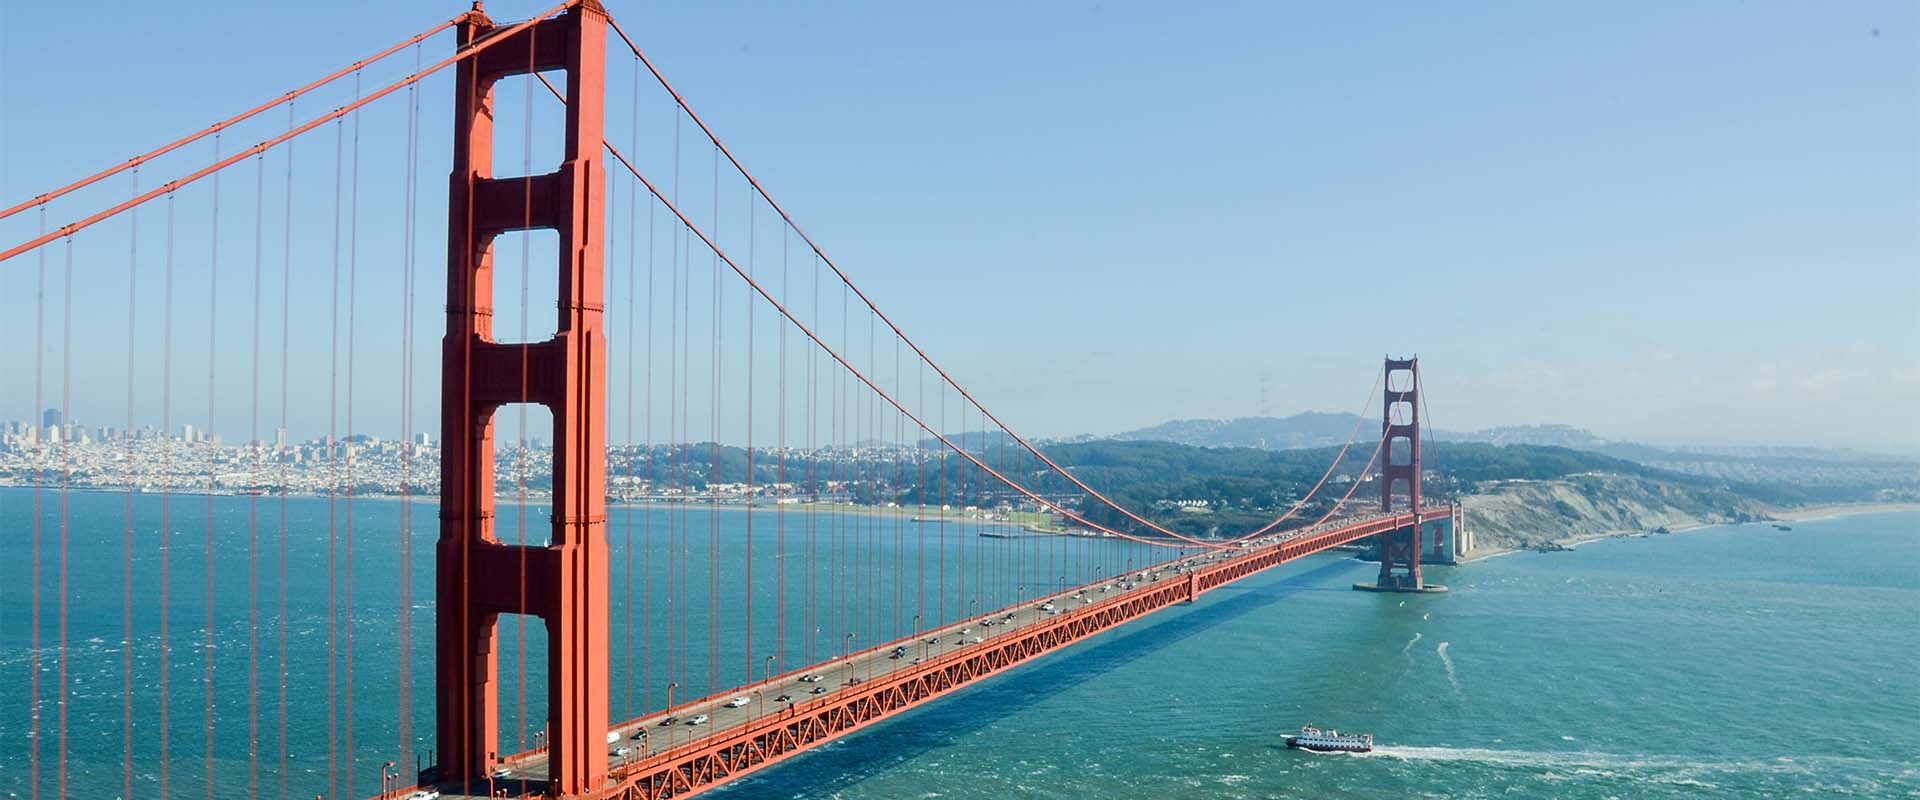 california_golden_gate_bridge